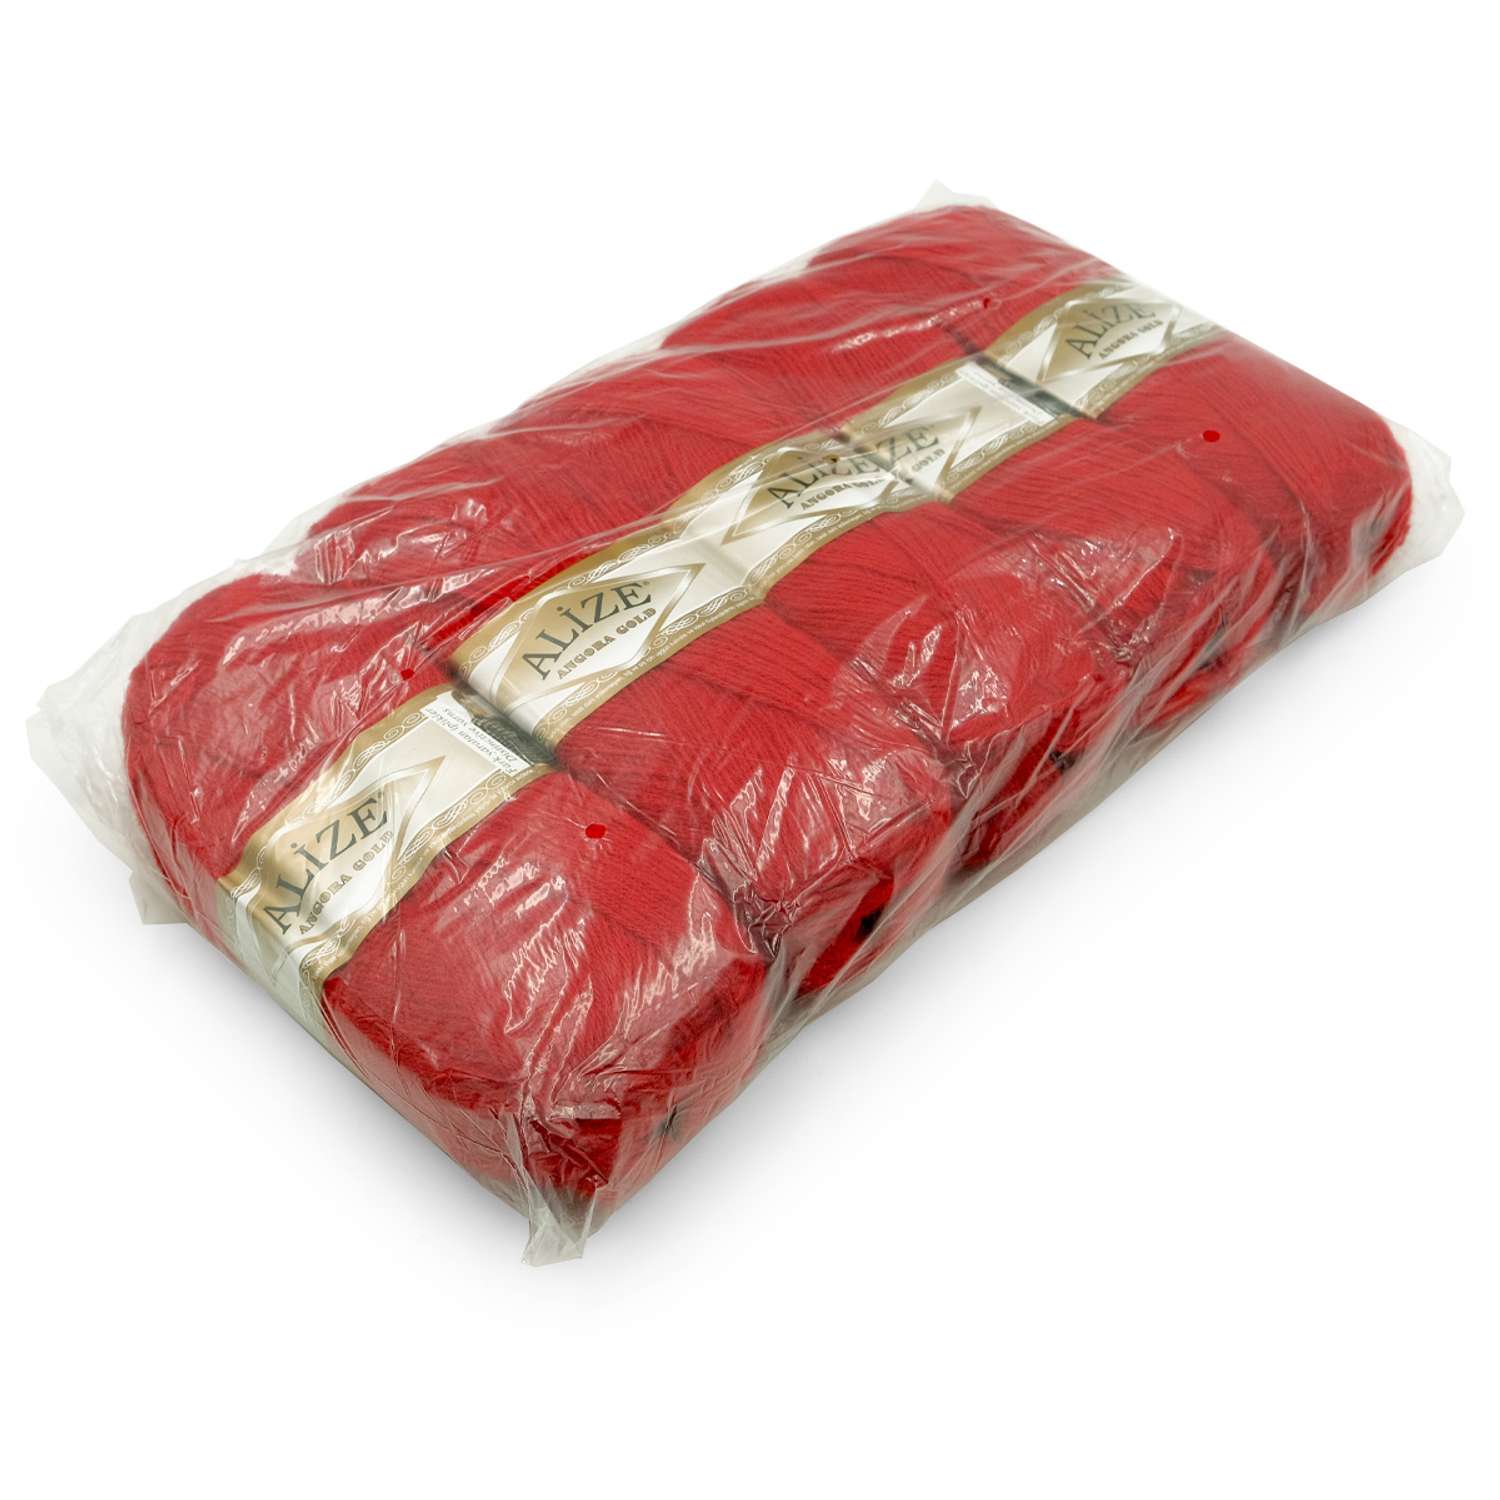 Пряжа Alize мягкая теплая для шарфов кардиганов Angora Gold 100 гр 550 м 5 мотков 106 красный - фото 8